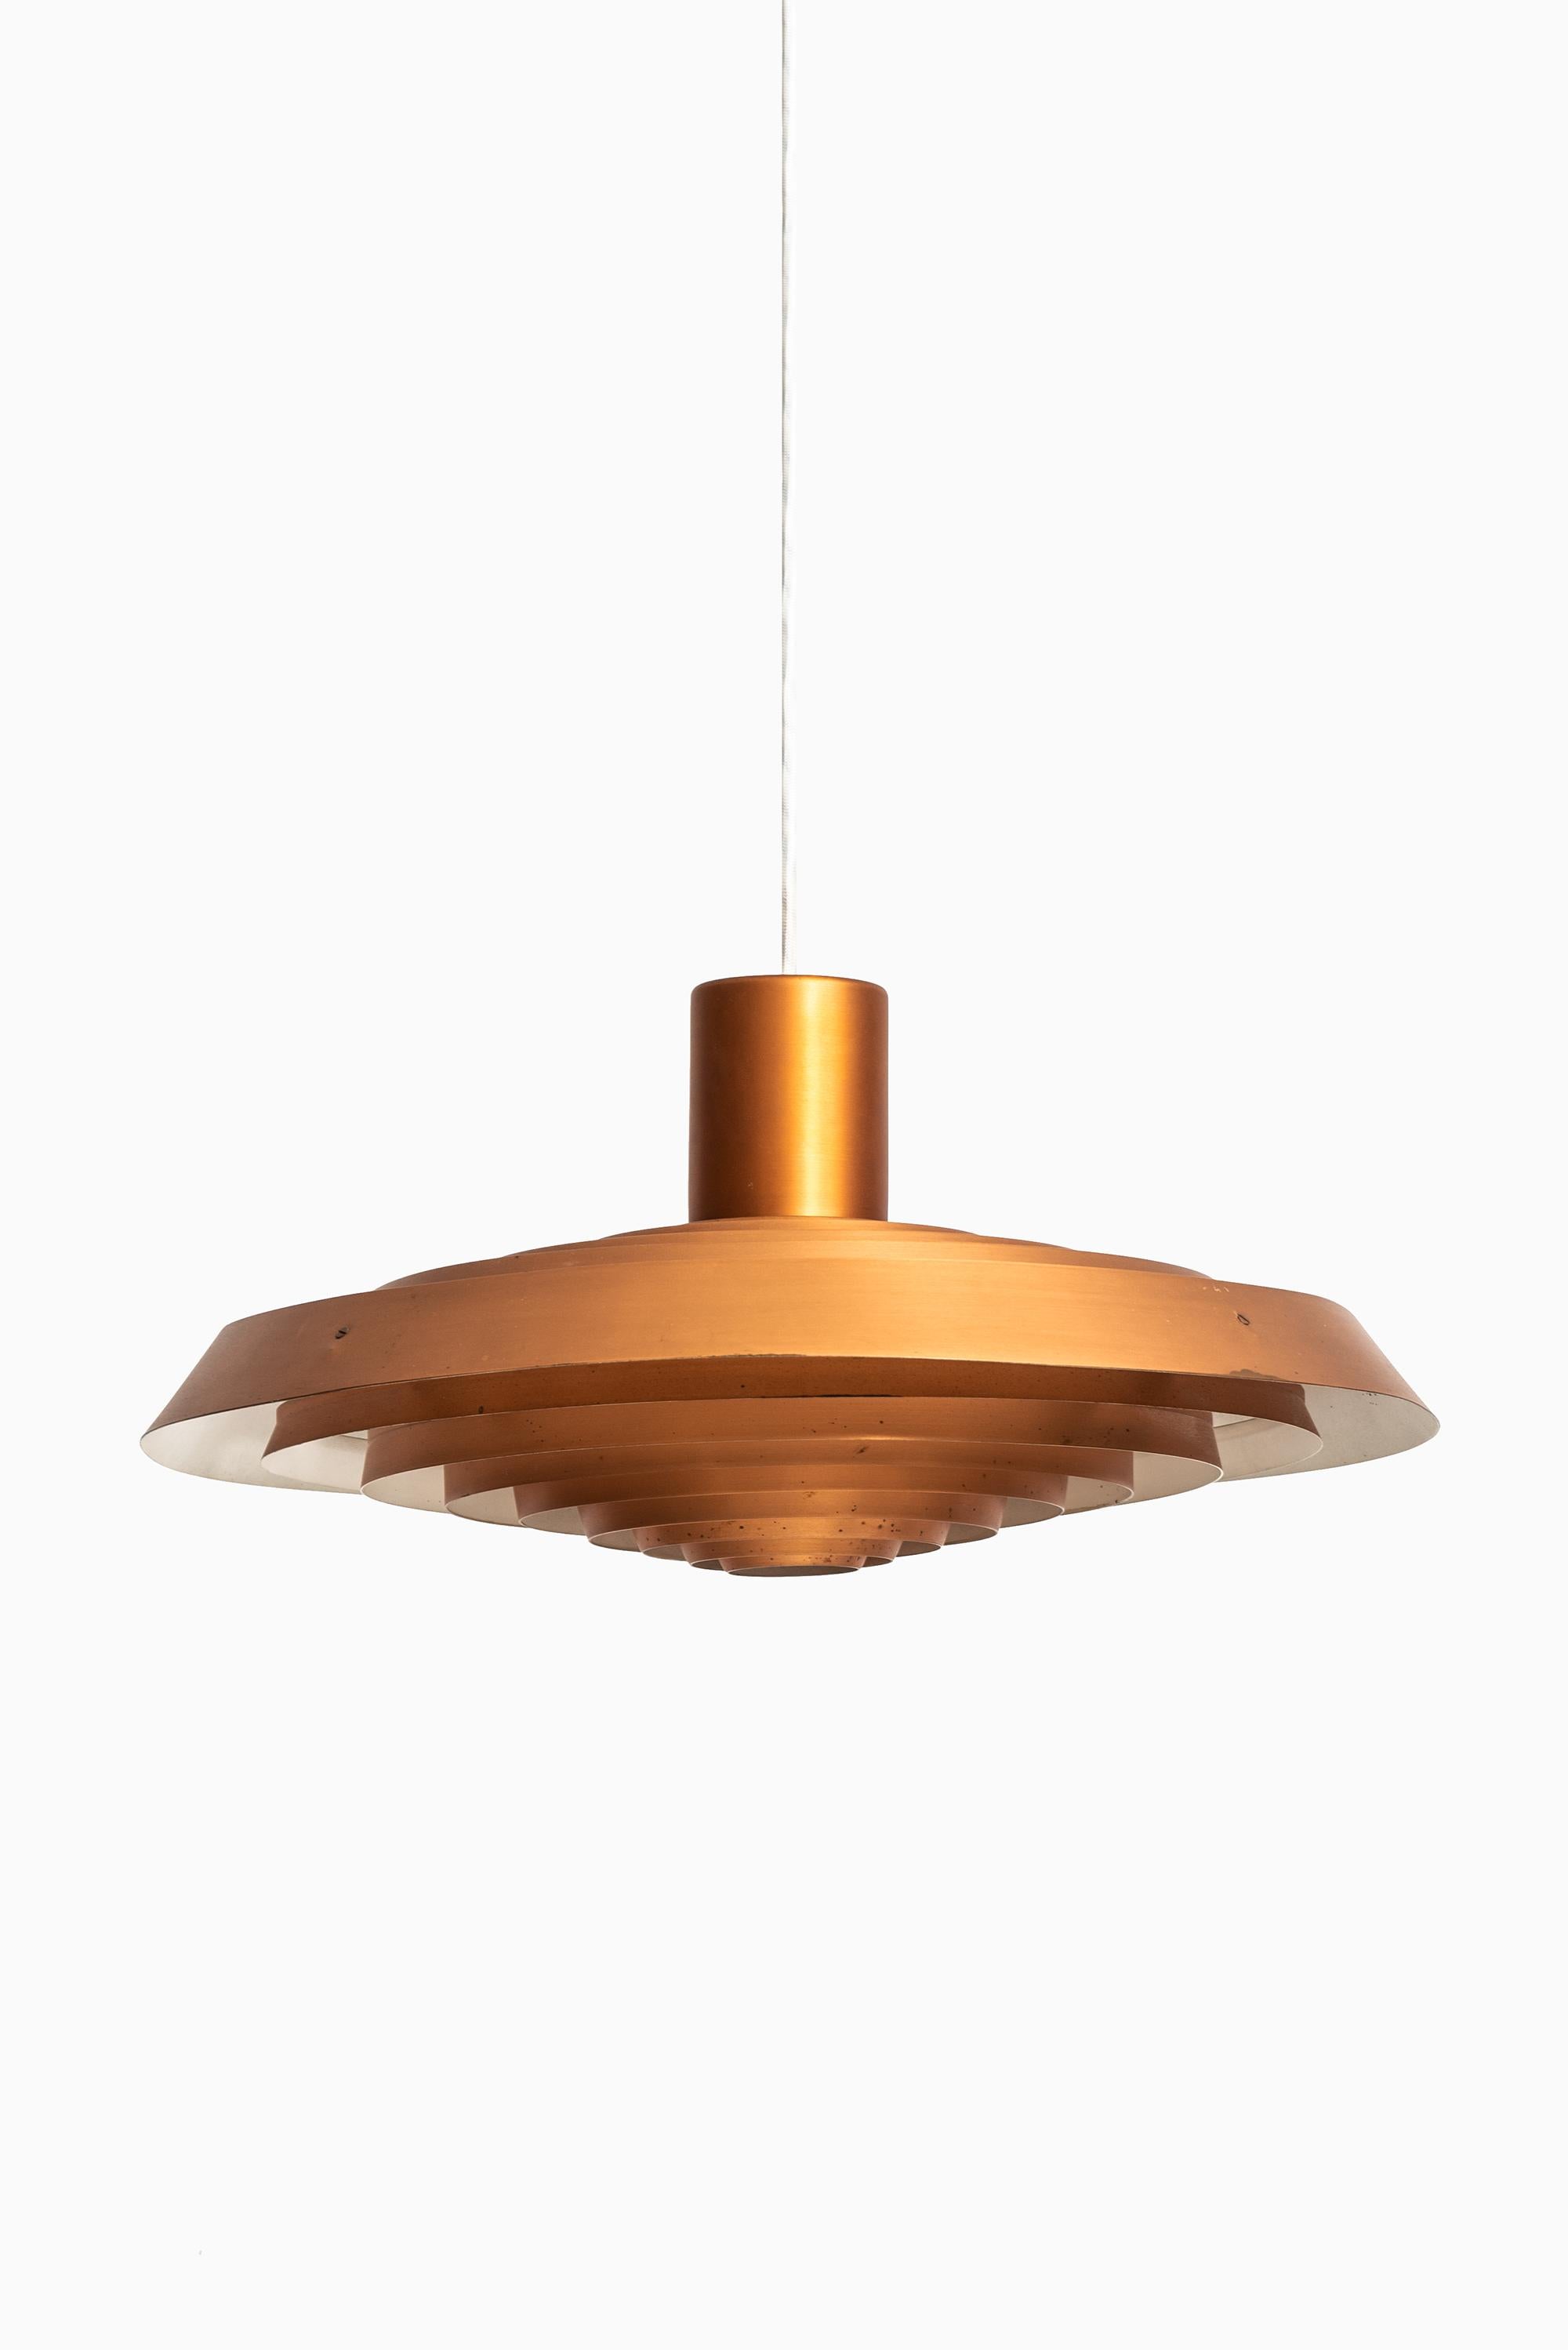 Scandinavian Modern Poul Henningsen Ceiling Lamp Langelinie in Copper by Louis Poulsen in Denmark